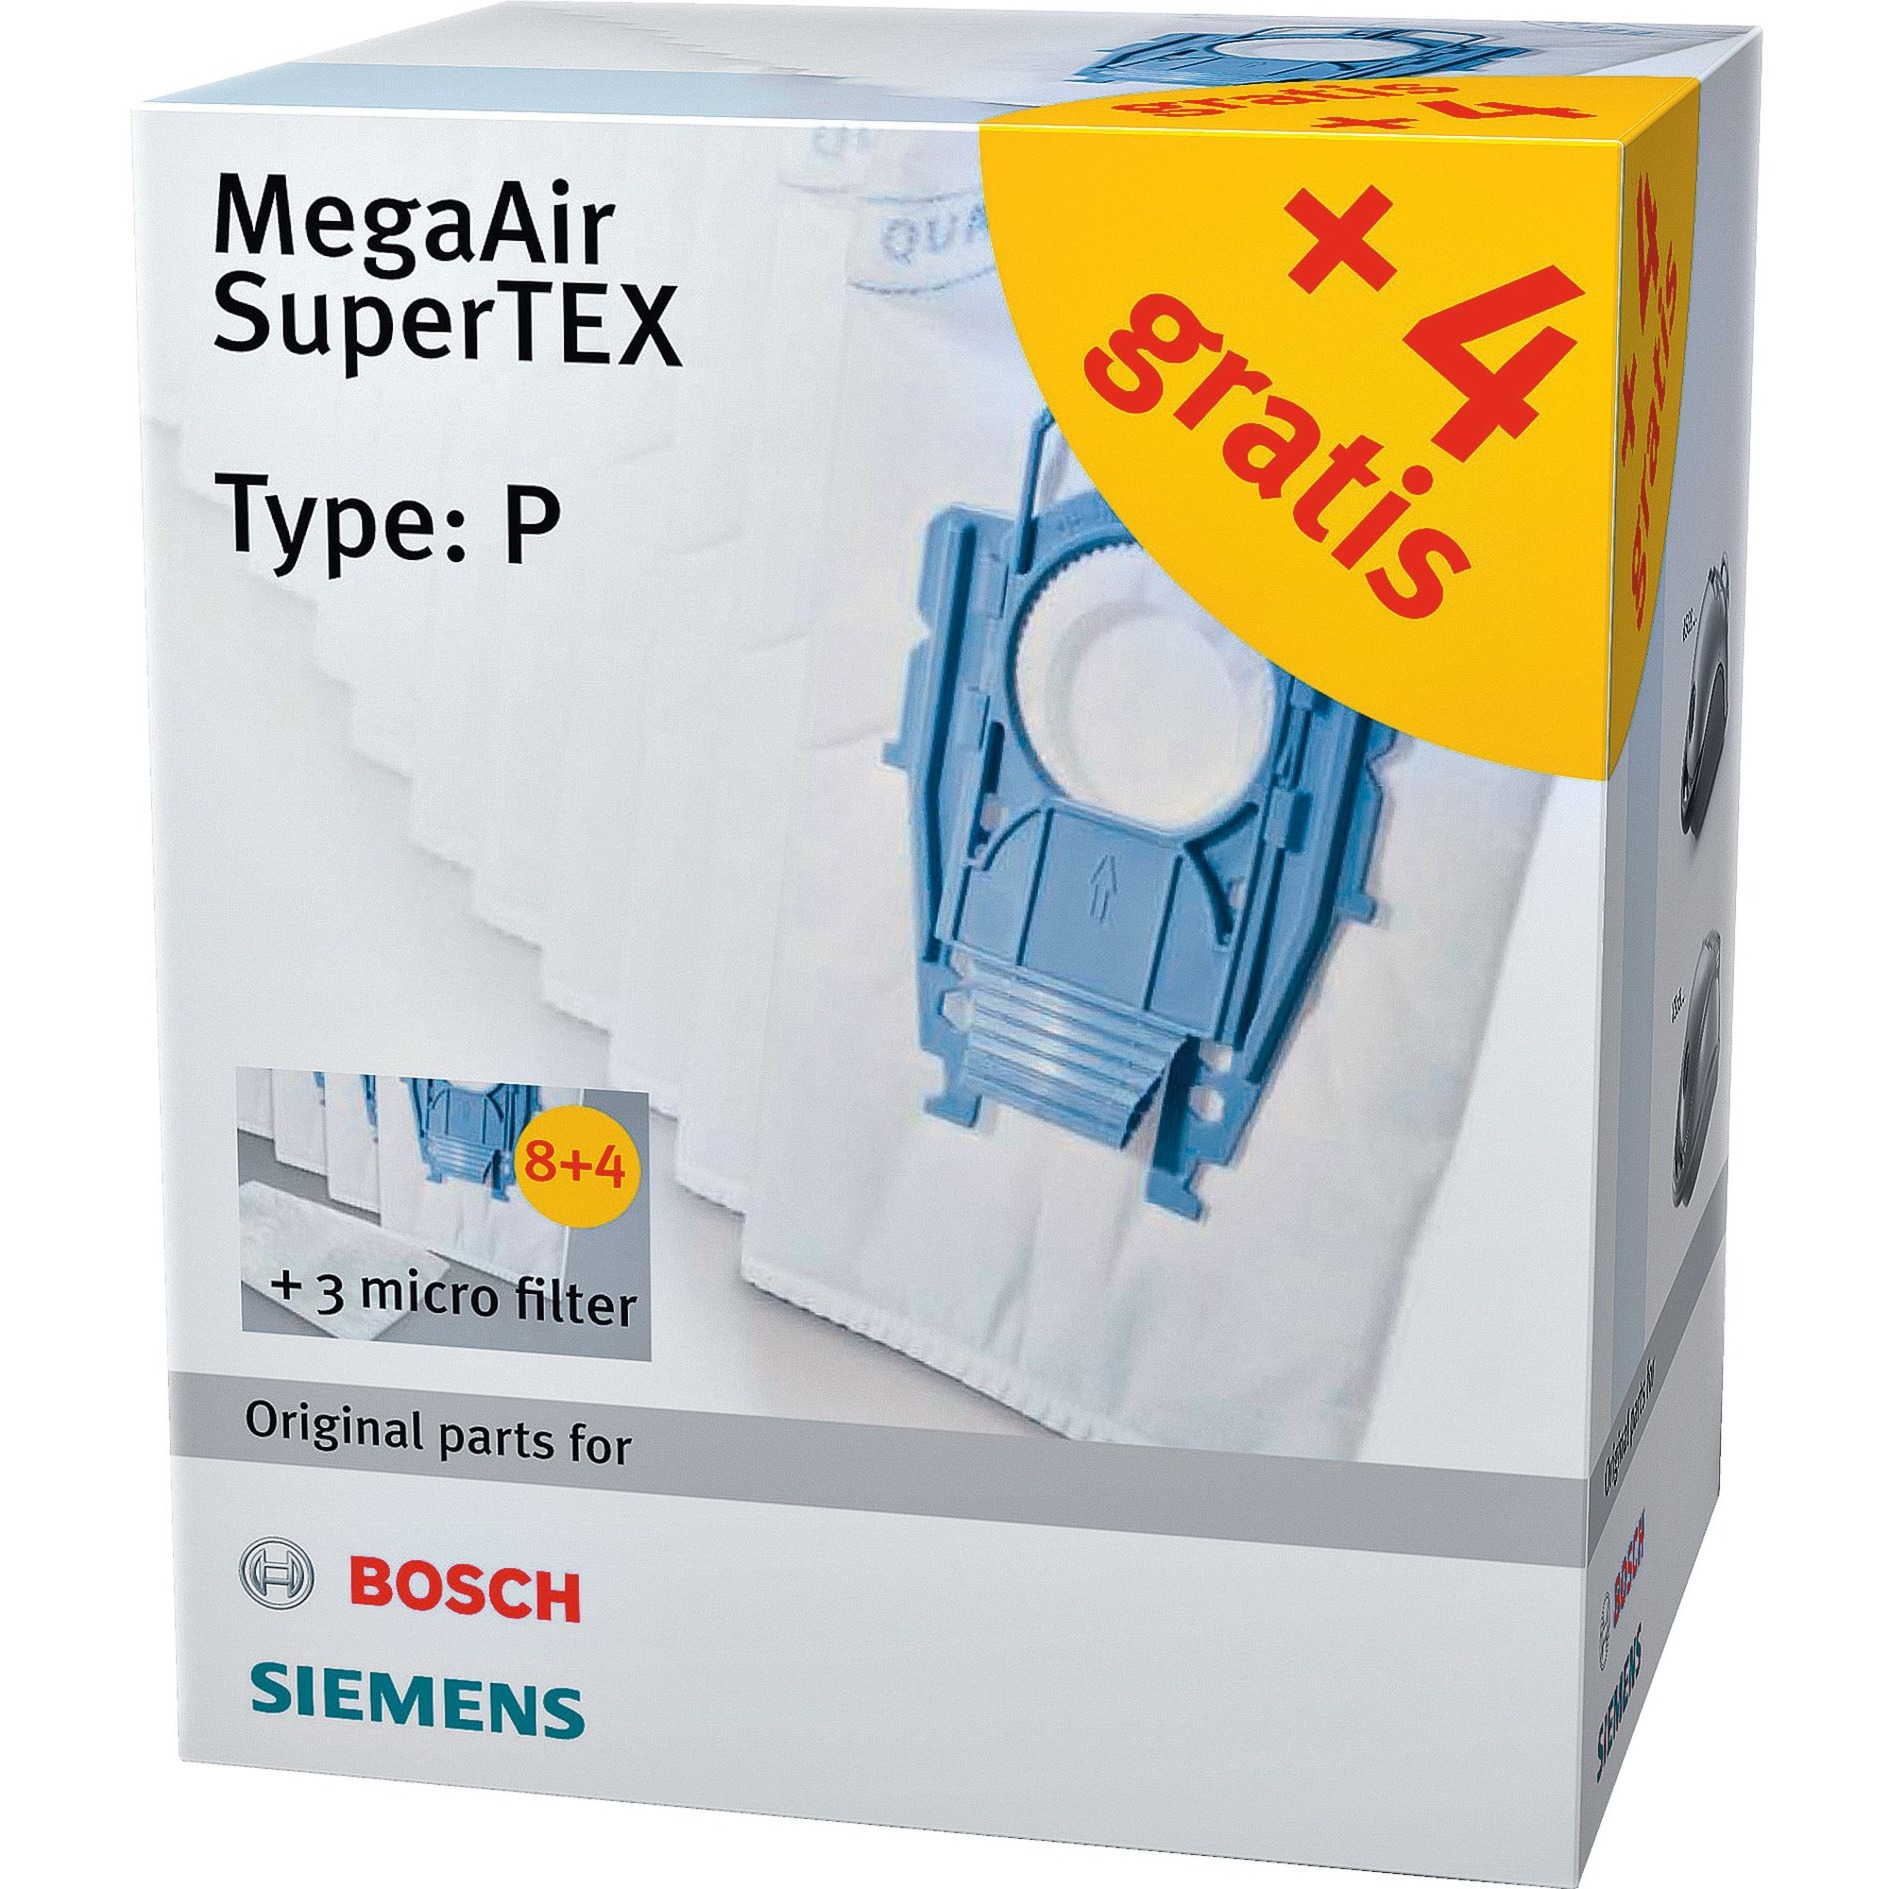 Image of Alternate - Staubsaugerbeutel MegaAir SuperTEX VZ123FP (12+3) Typ P online einkaufen bei Alternate